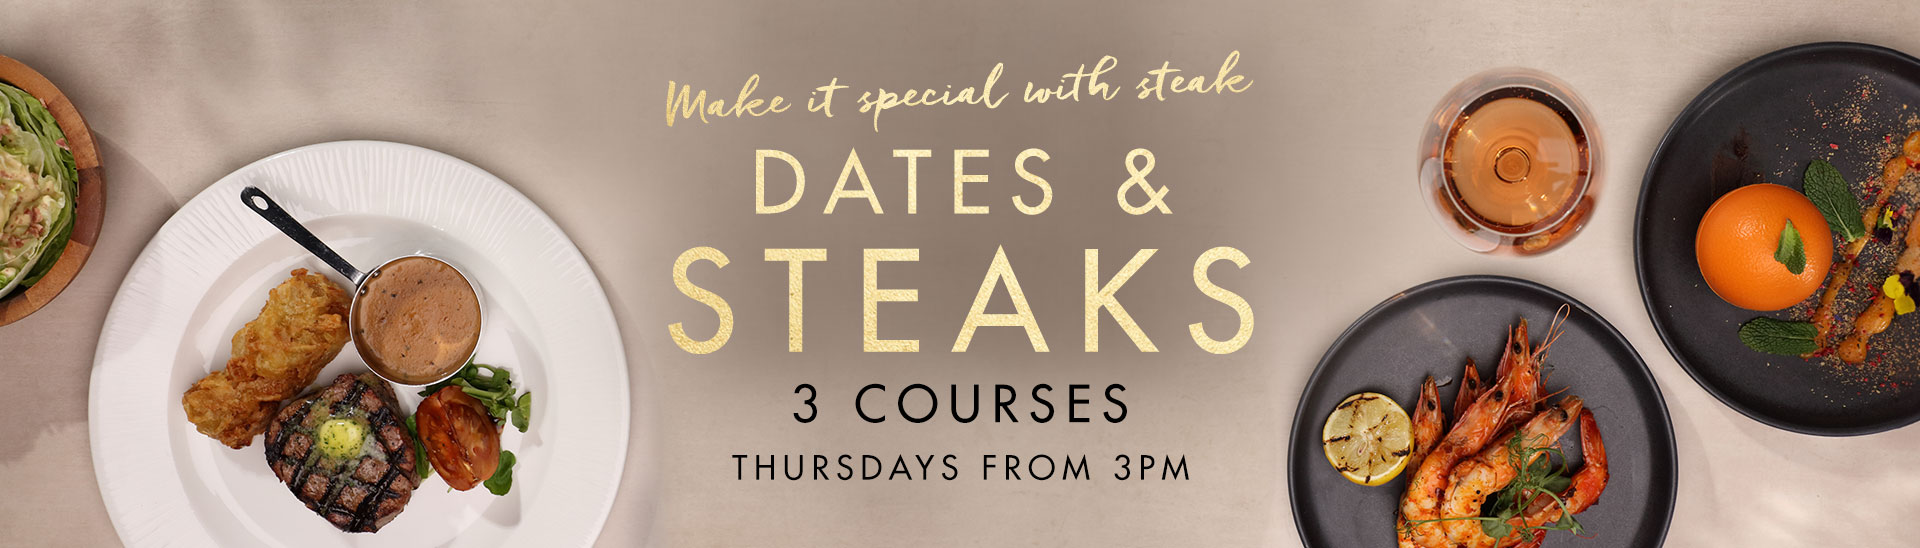 Dates & Steaks at Miller & Carter Sherwood Forest